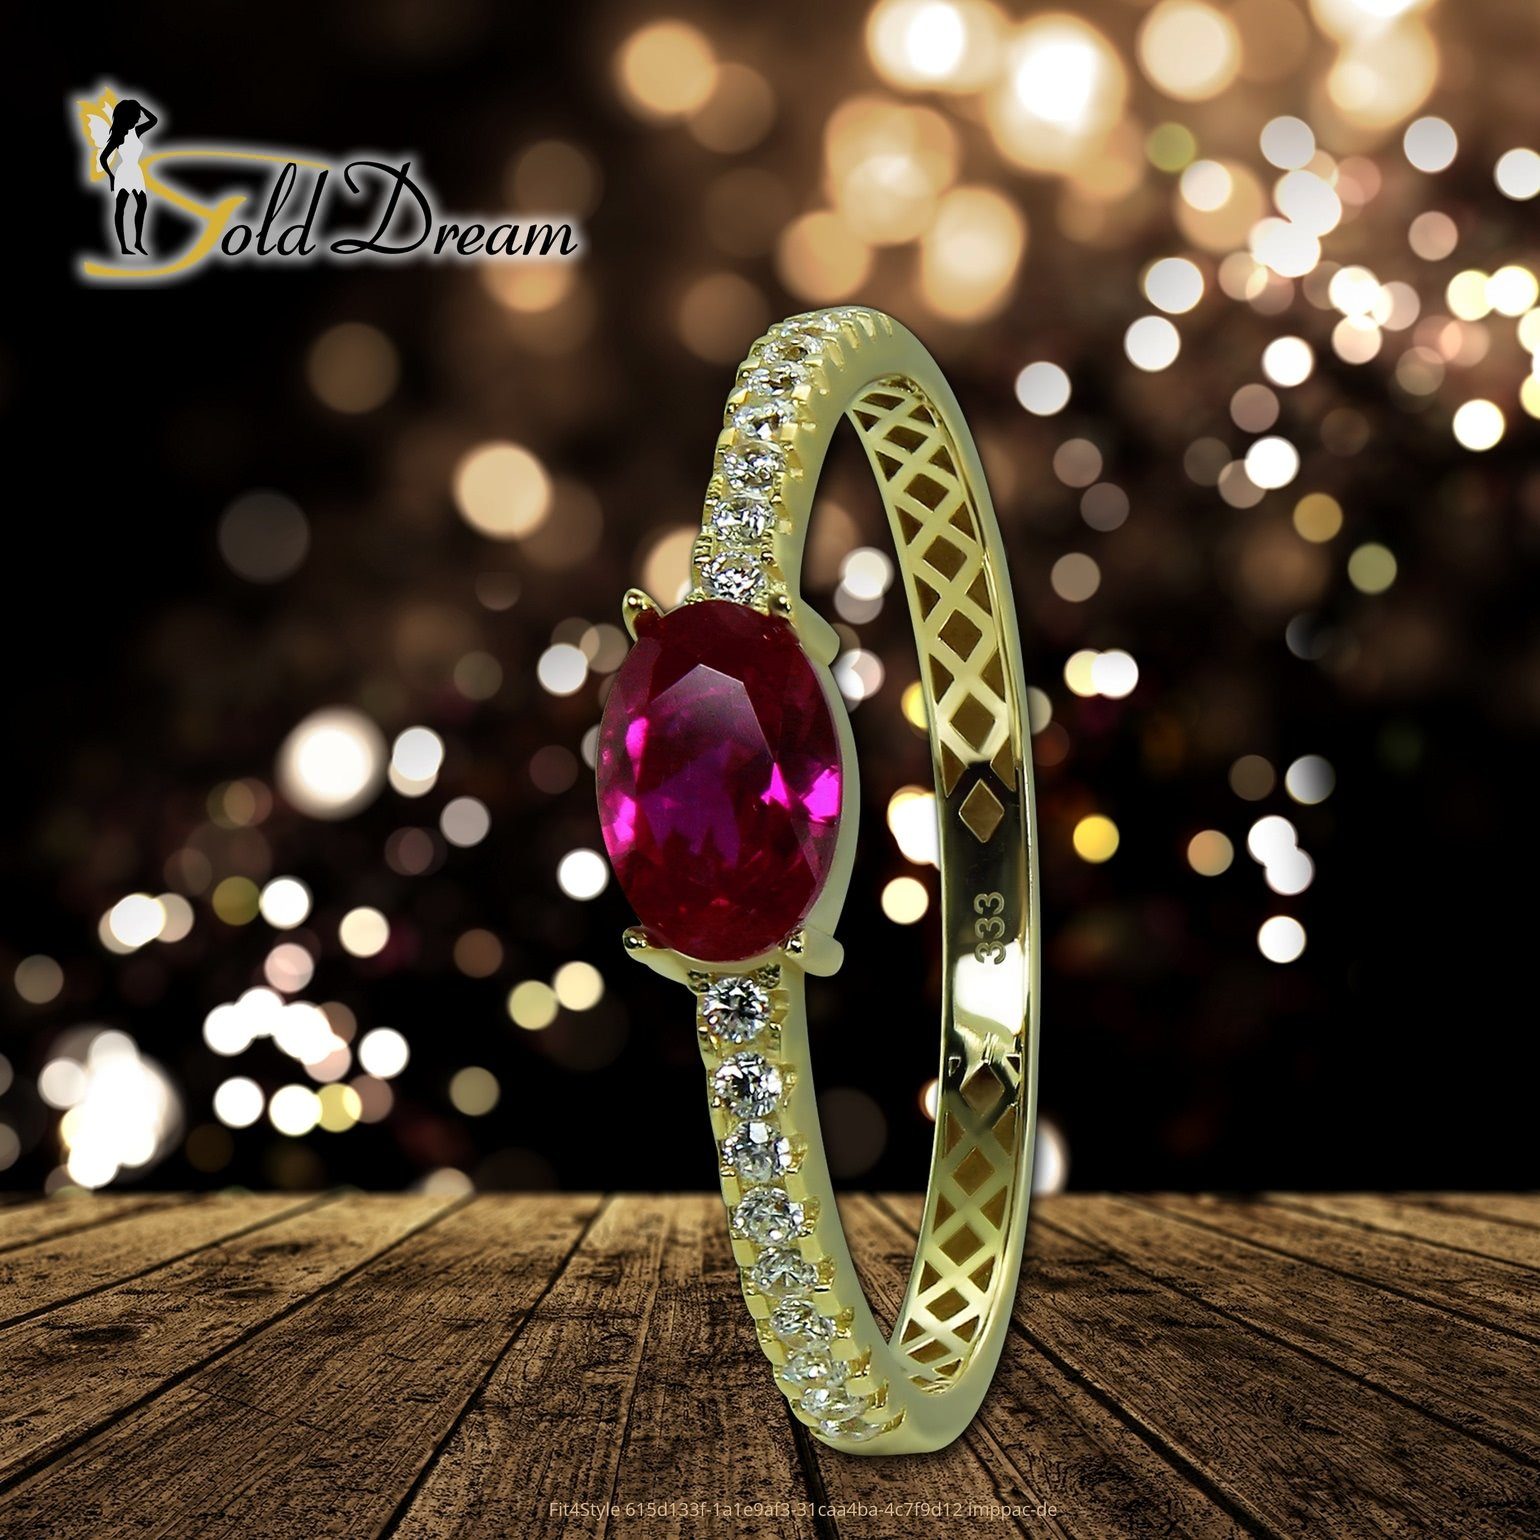 Gold Ring Beauty (Fingerring), weiß, Ring Karat, Gr.58 8 pink Farbe: Goldring - GoldDream 333 Gelbgold gold, Damen Beauty GoldDream